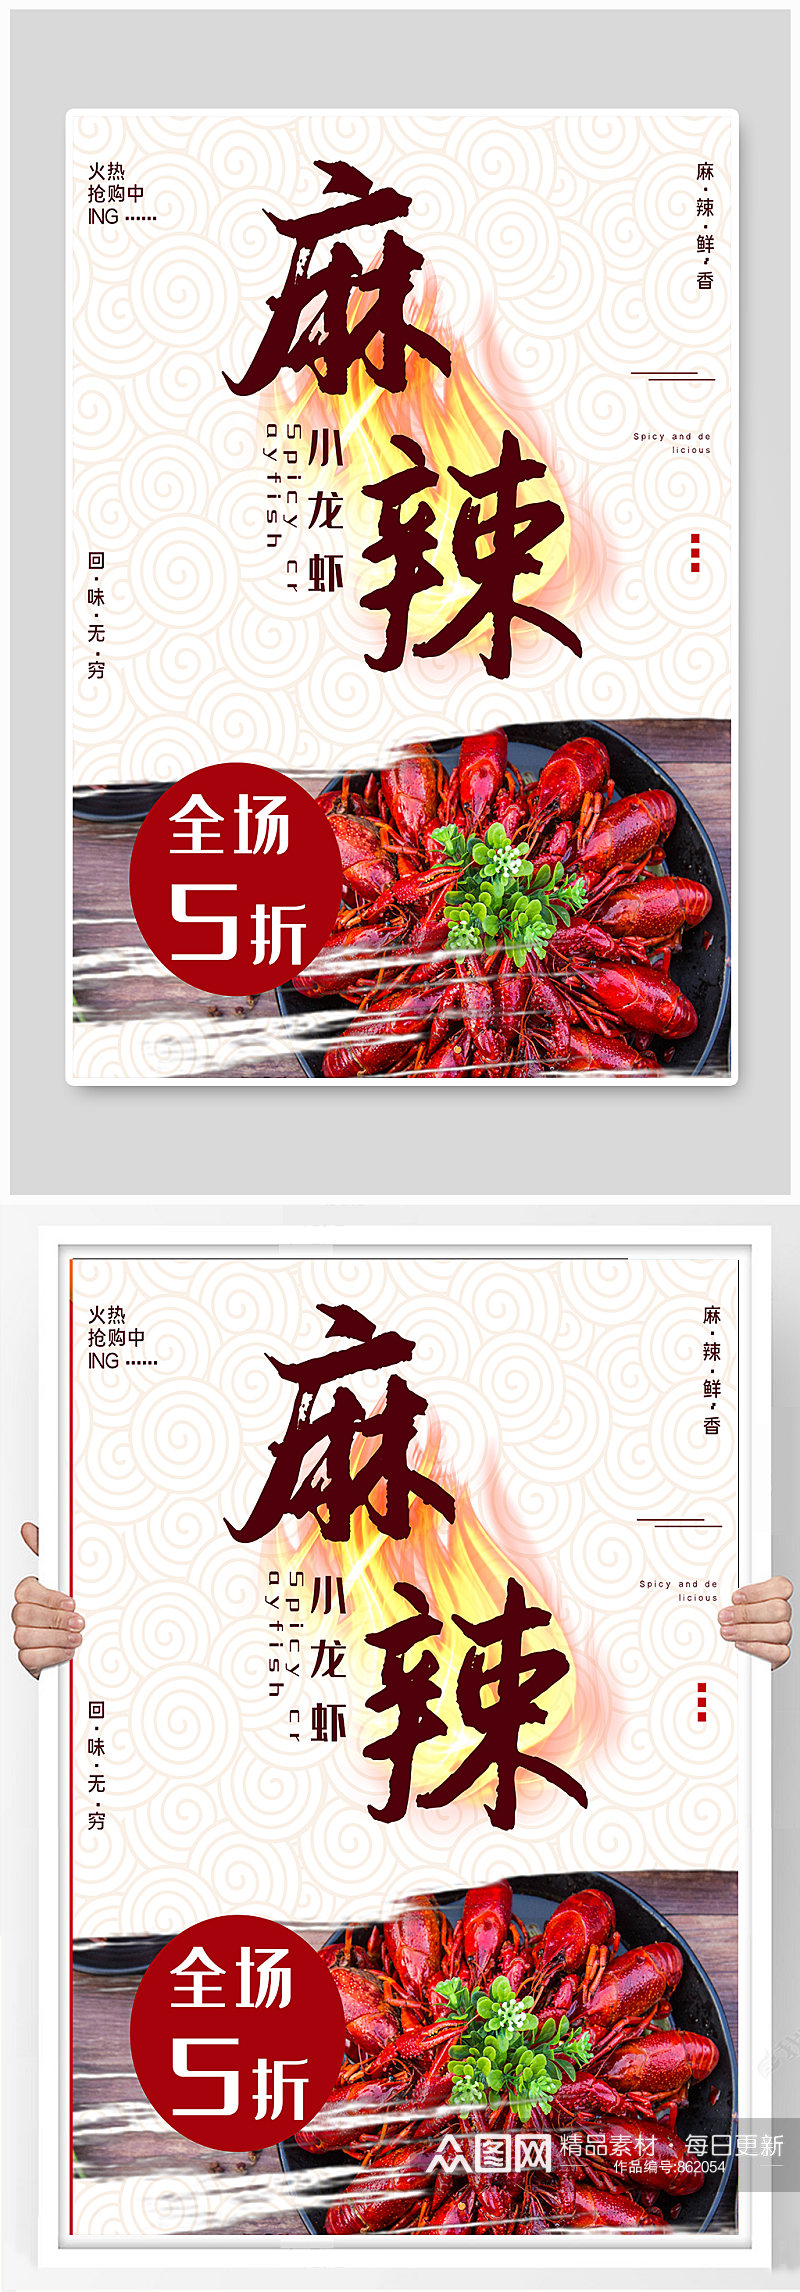 中餐厅麻辣小龙虾菜单海报素材